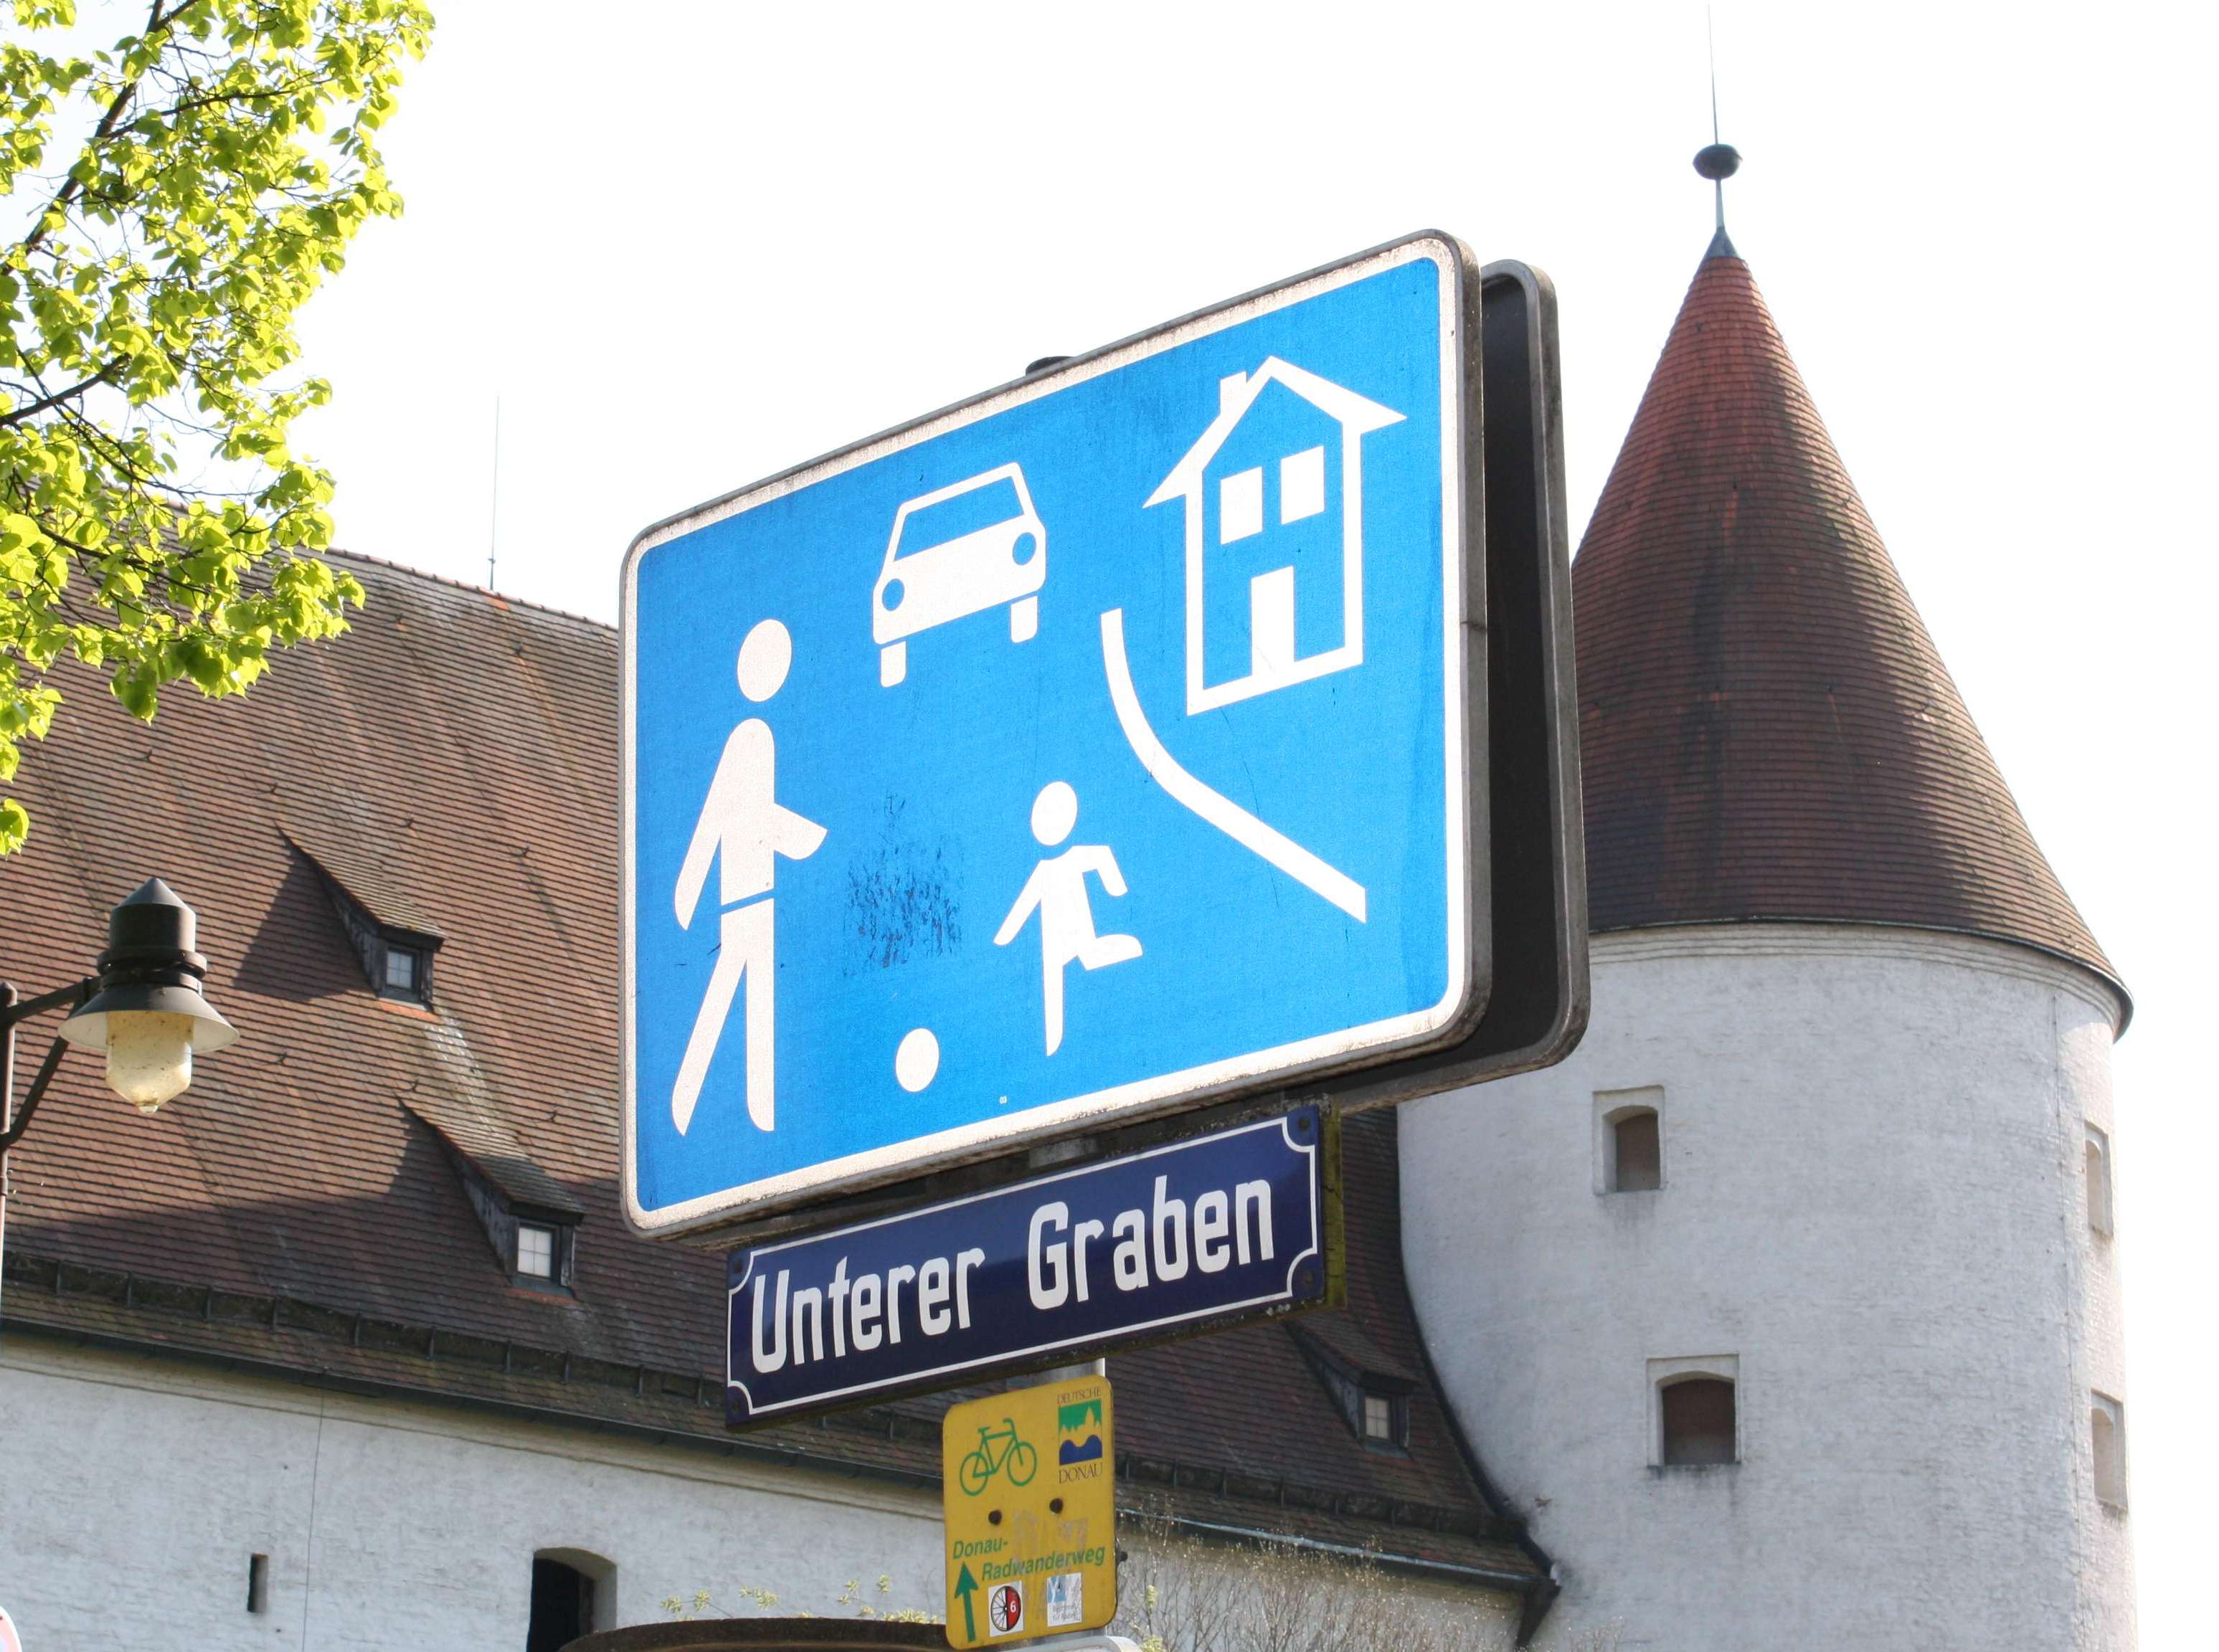 Road sign: pedestrian area.